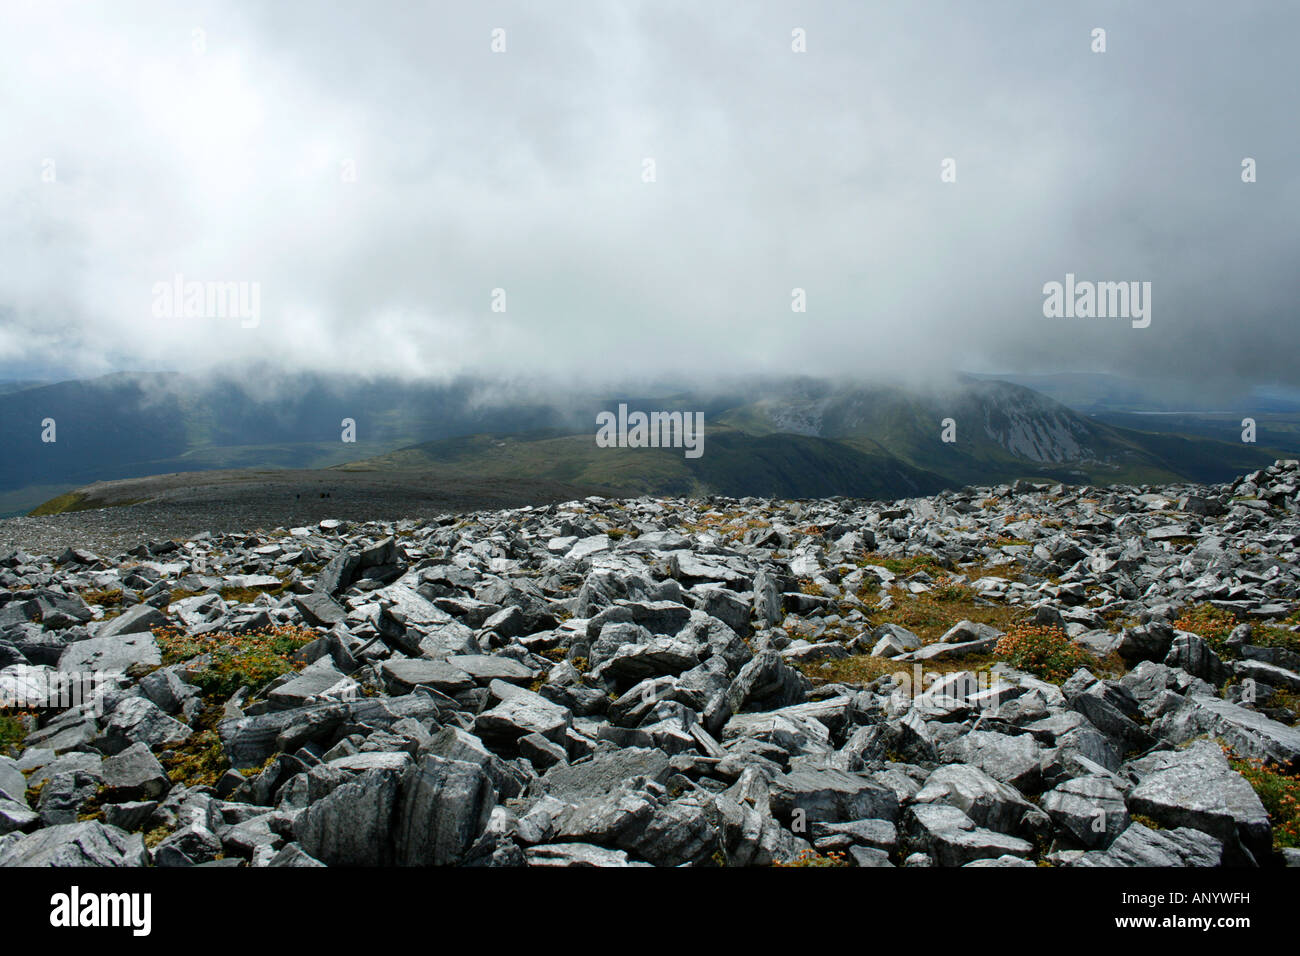 La météo changeante au sommet du Muckish (alias de table), la montagne, Donegal, Ireland Inishowen Banque D'Images